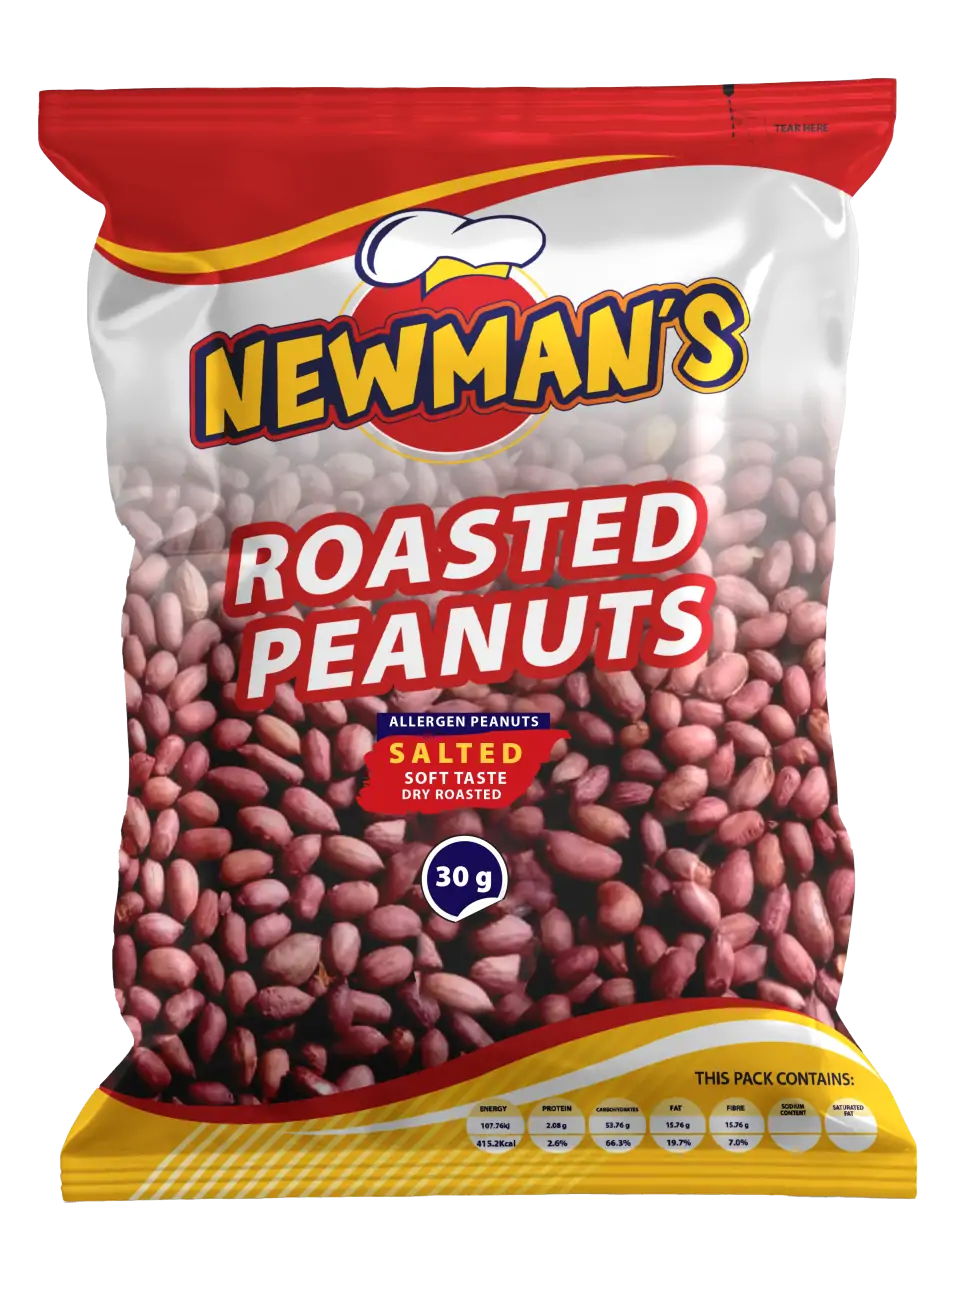 Roaste Peanuts 30g